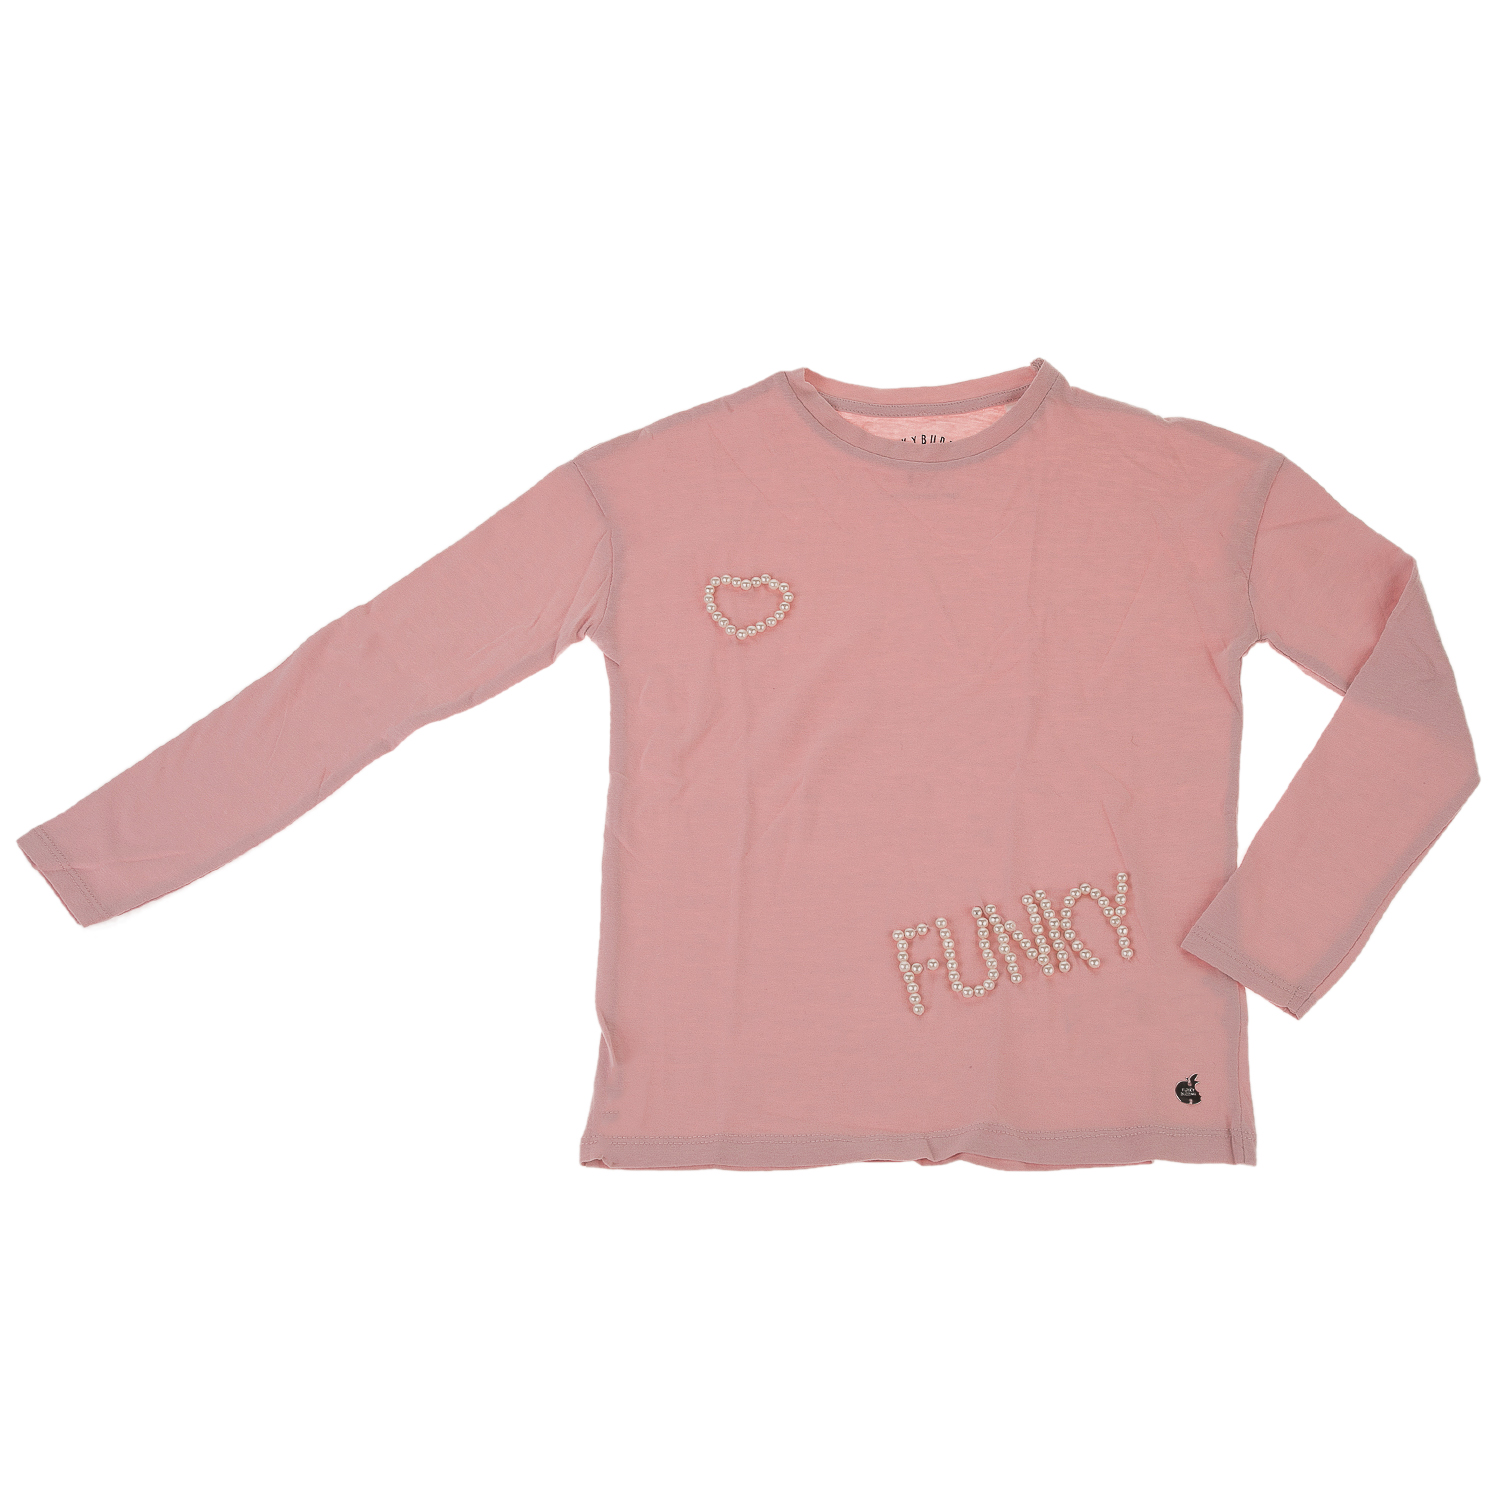 Παιδικά/Girls/Ρούχα/Μπλούζες Μακρυμάνικες FUNKY BUDDHA - Παιδική μπλούζα FUNKY BUDDHA ροζ